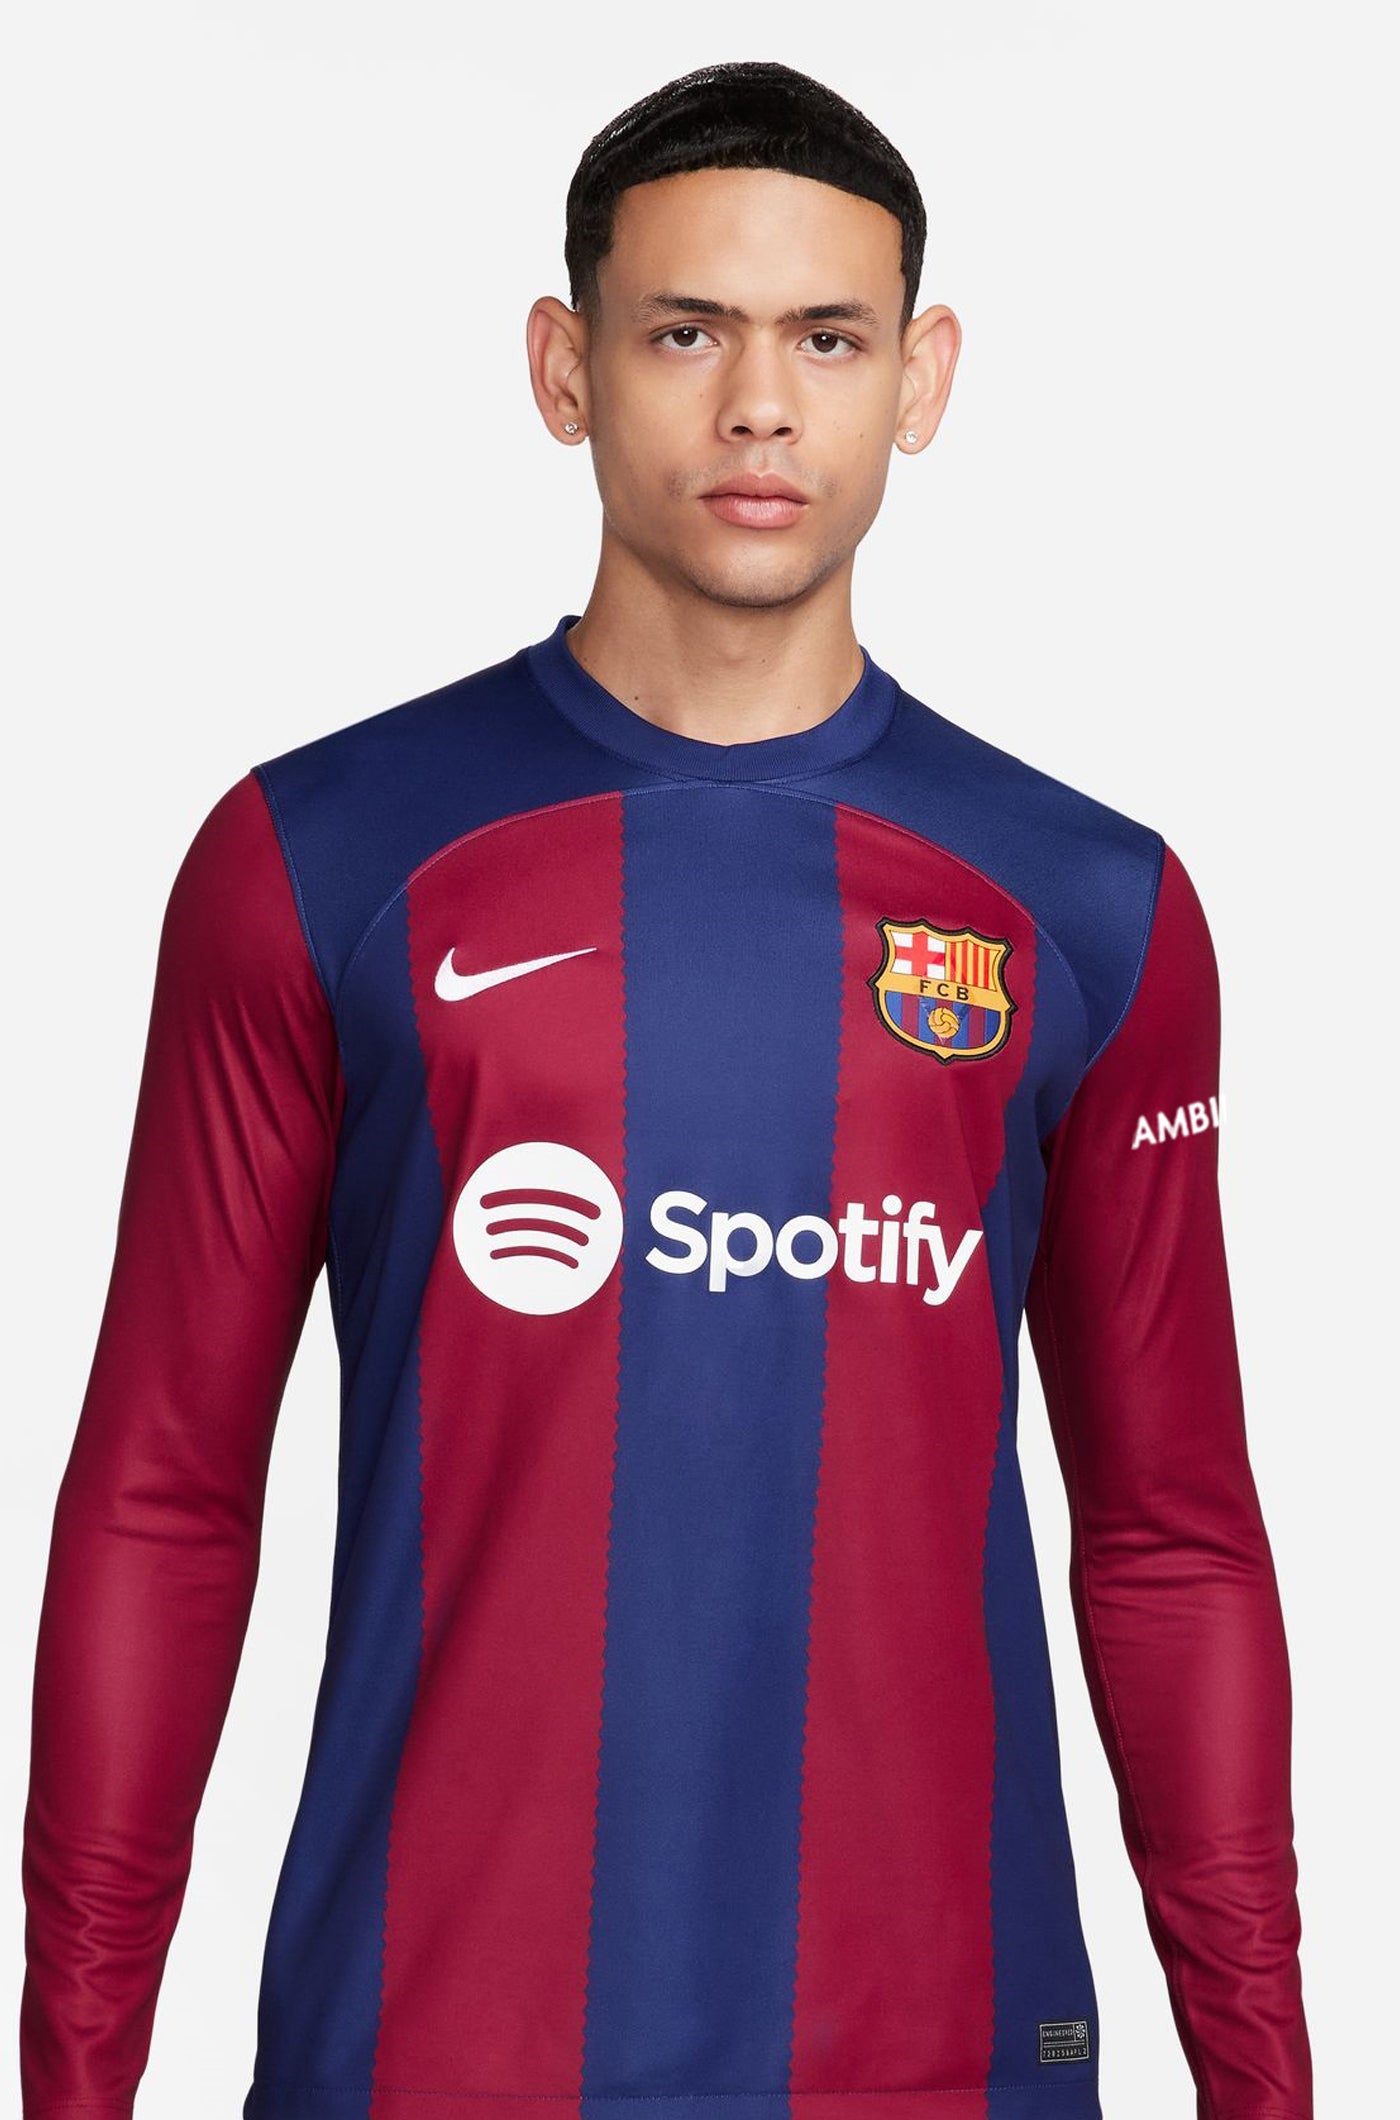 FC Barcelona home shirt 23/24 - Long-sleeve Player's Edition - FERMÍN